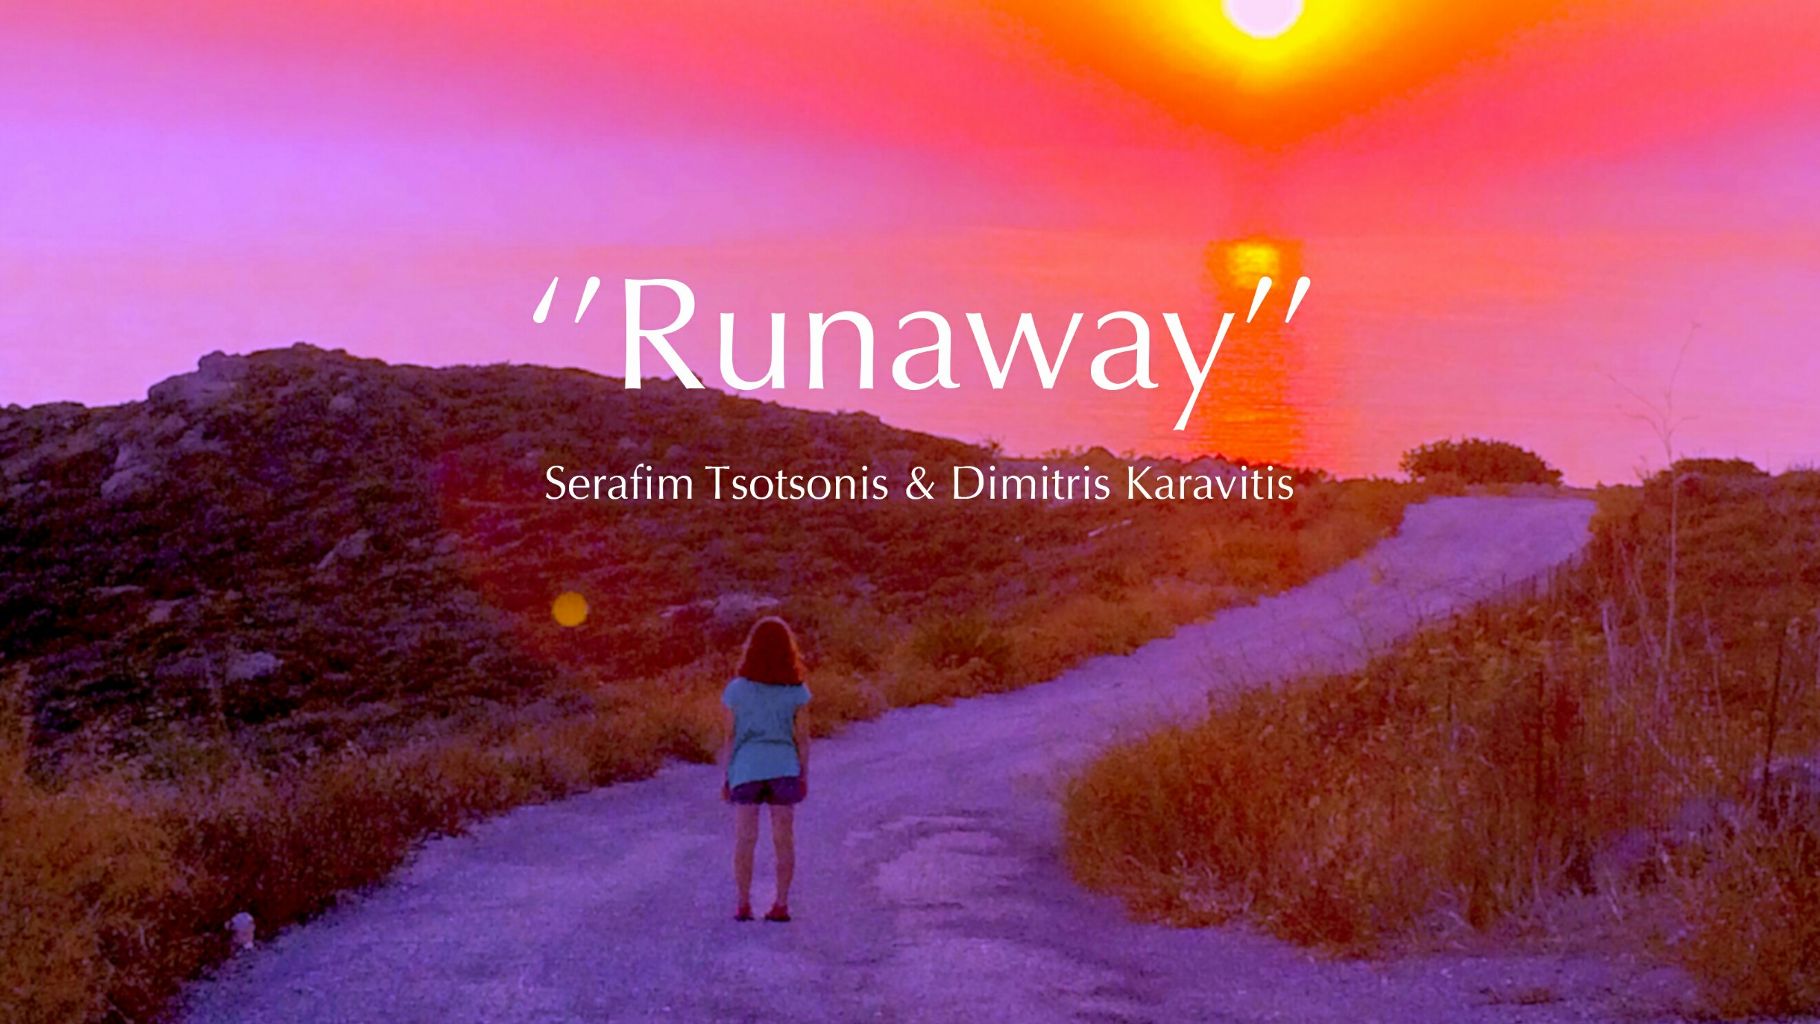 Το μυστικό τραγούδι της εβδομάδας “Runaway” –  Serafim Tsotsonis & Dimitris Karavitis